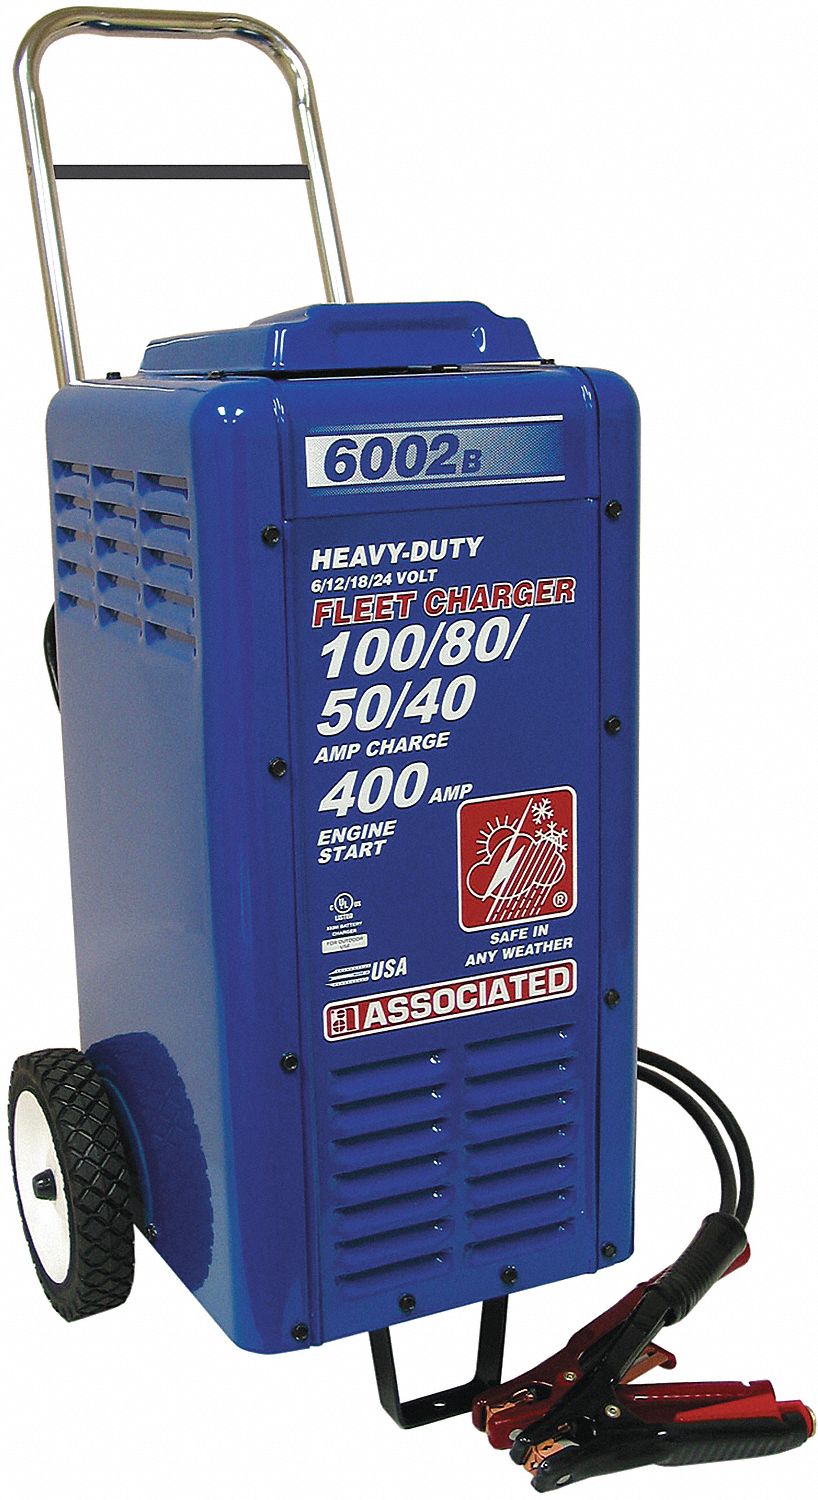 Borniers de puissance 240 ampères 600 volts positif et négatif avec cosses  et accessoires - Discount AutoSport